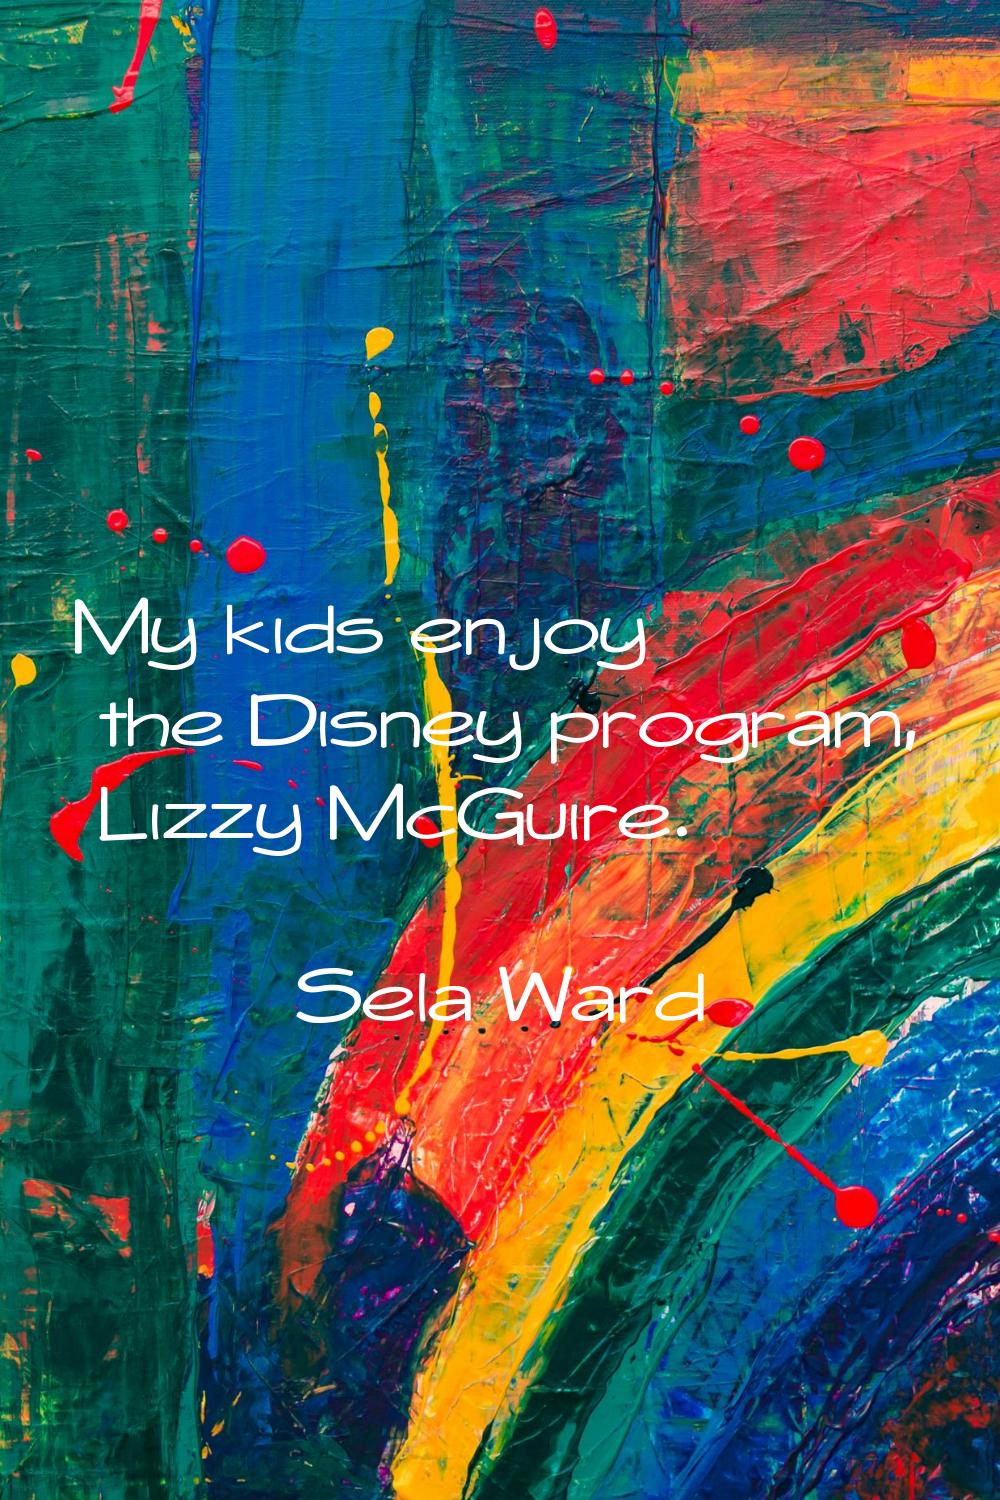 My kids enjoy the Disney program, Lizzy McGuire.